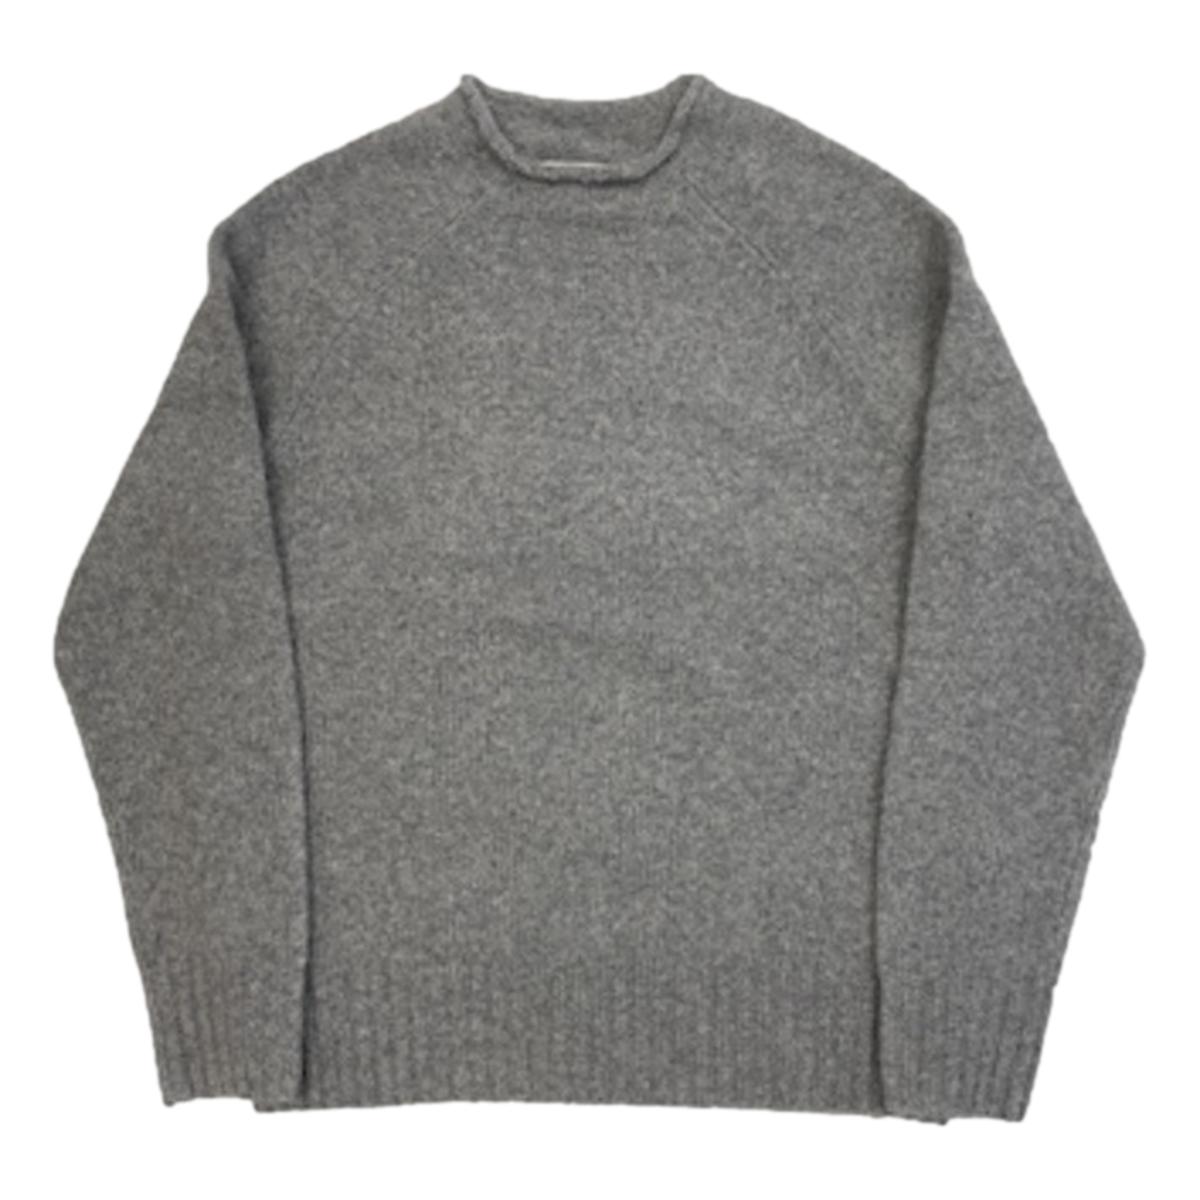 Alex Alpaca Sweater Heather Grey - Sweater